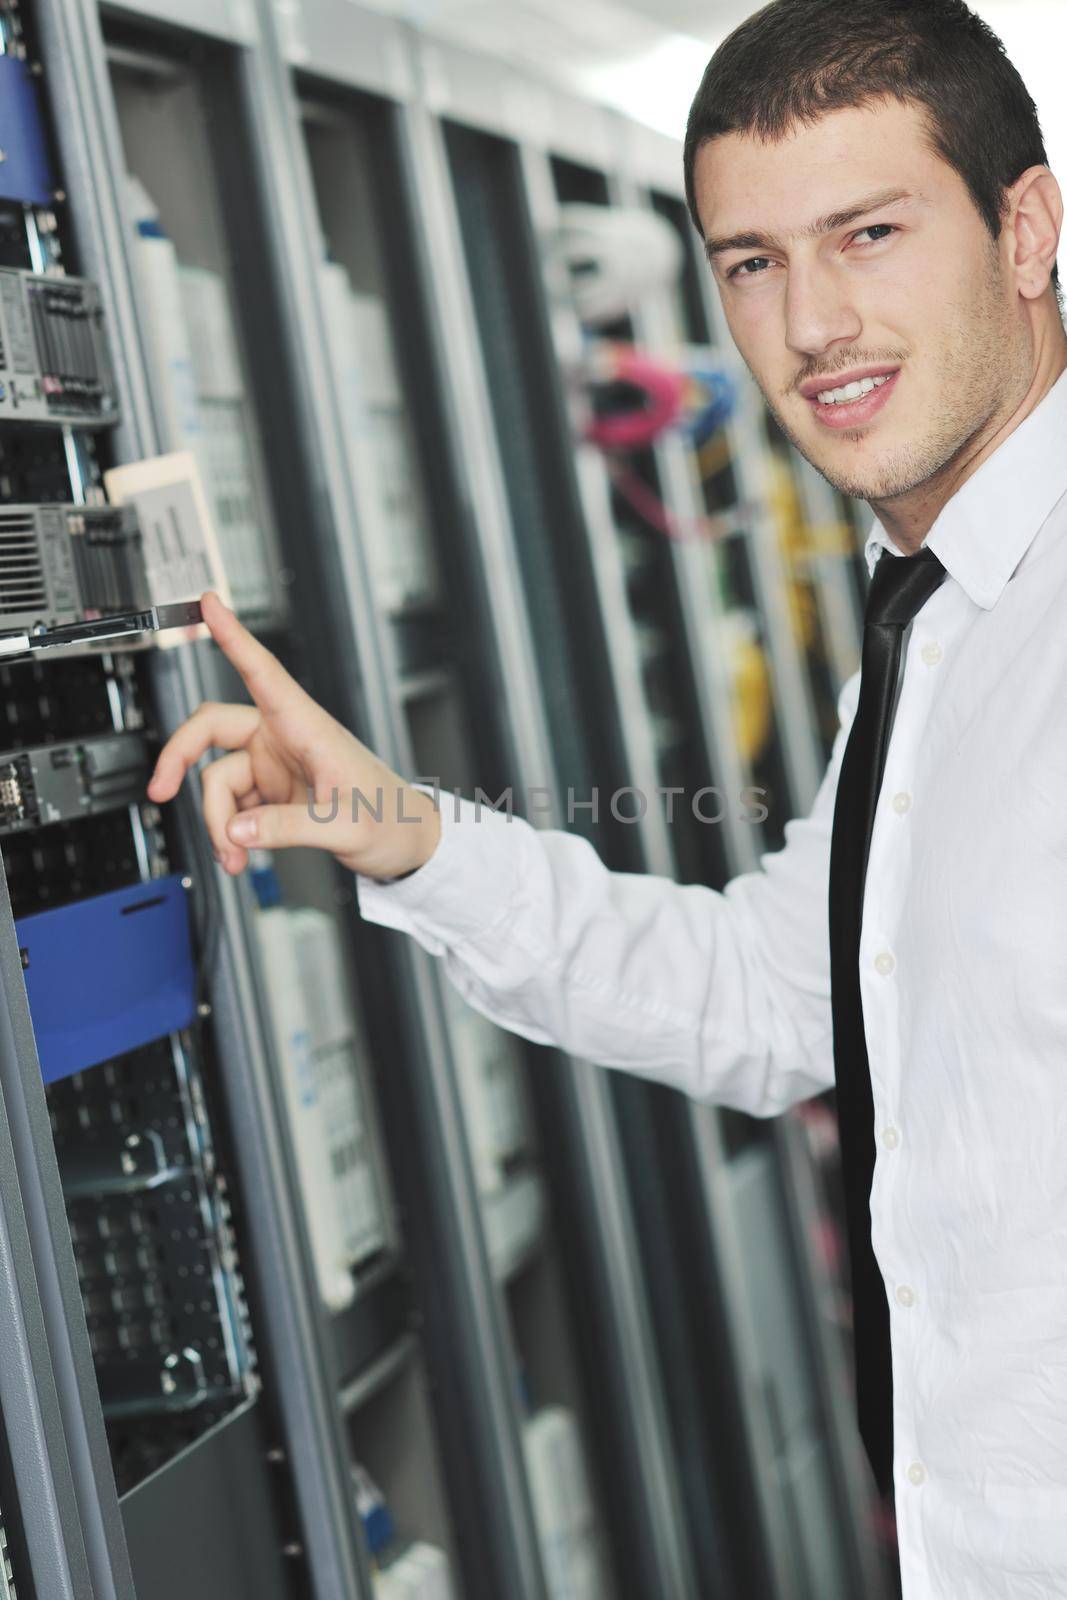 young engeneer in datacenter server room by dotshock